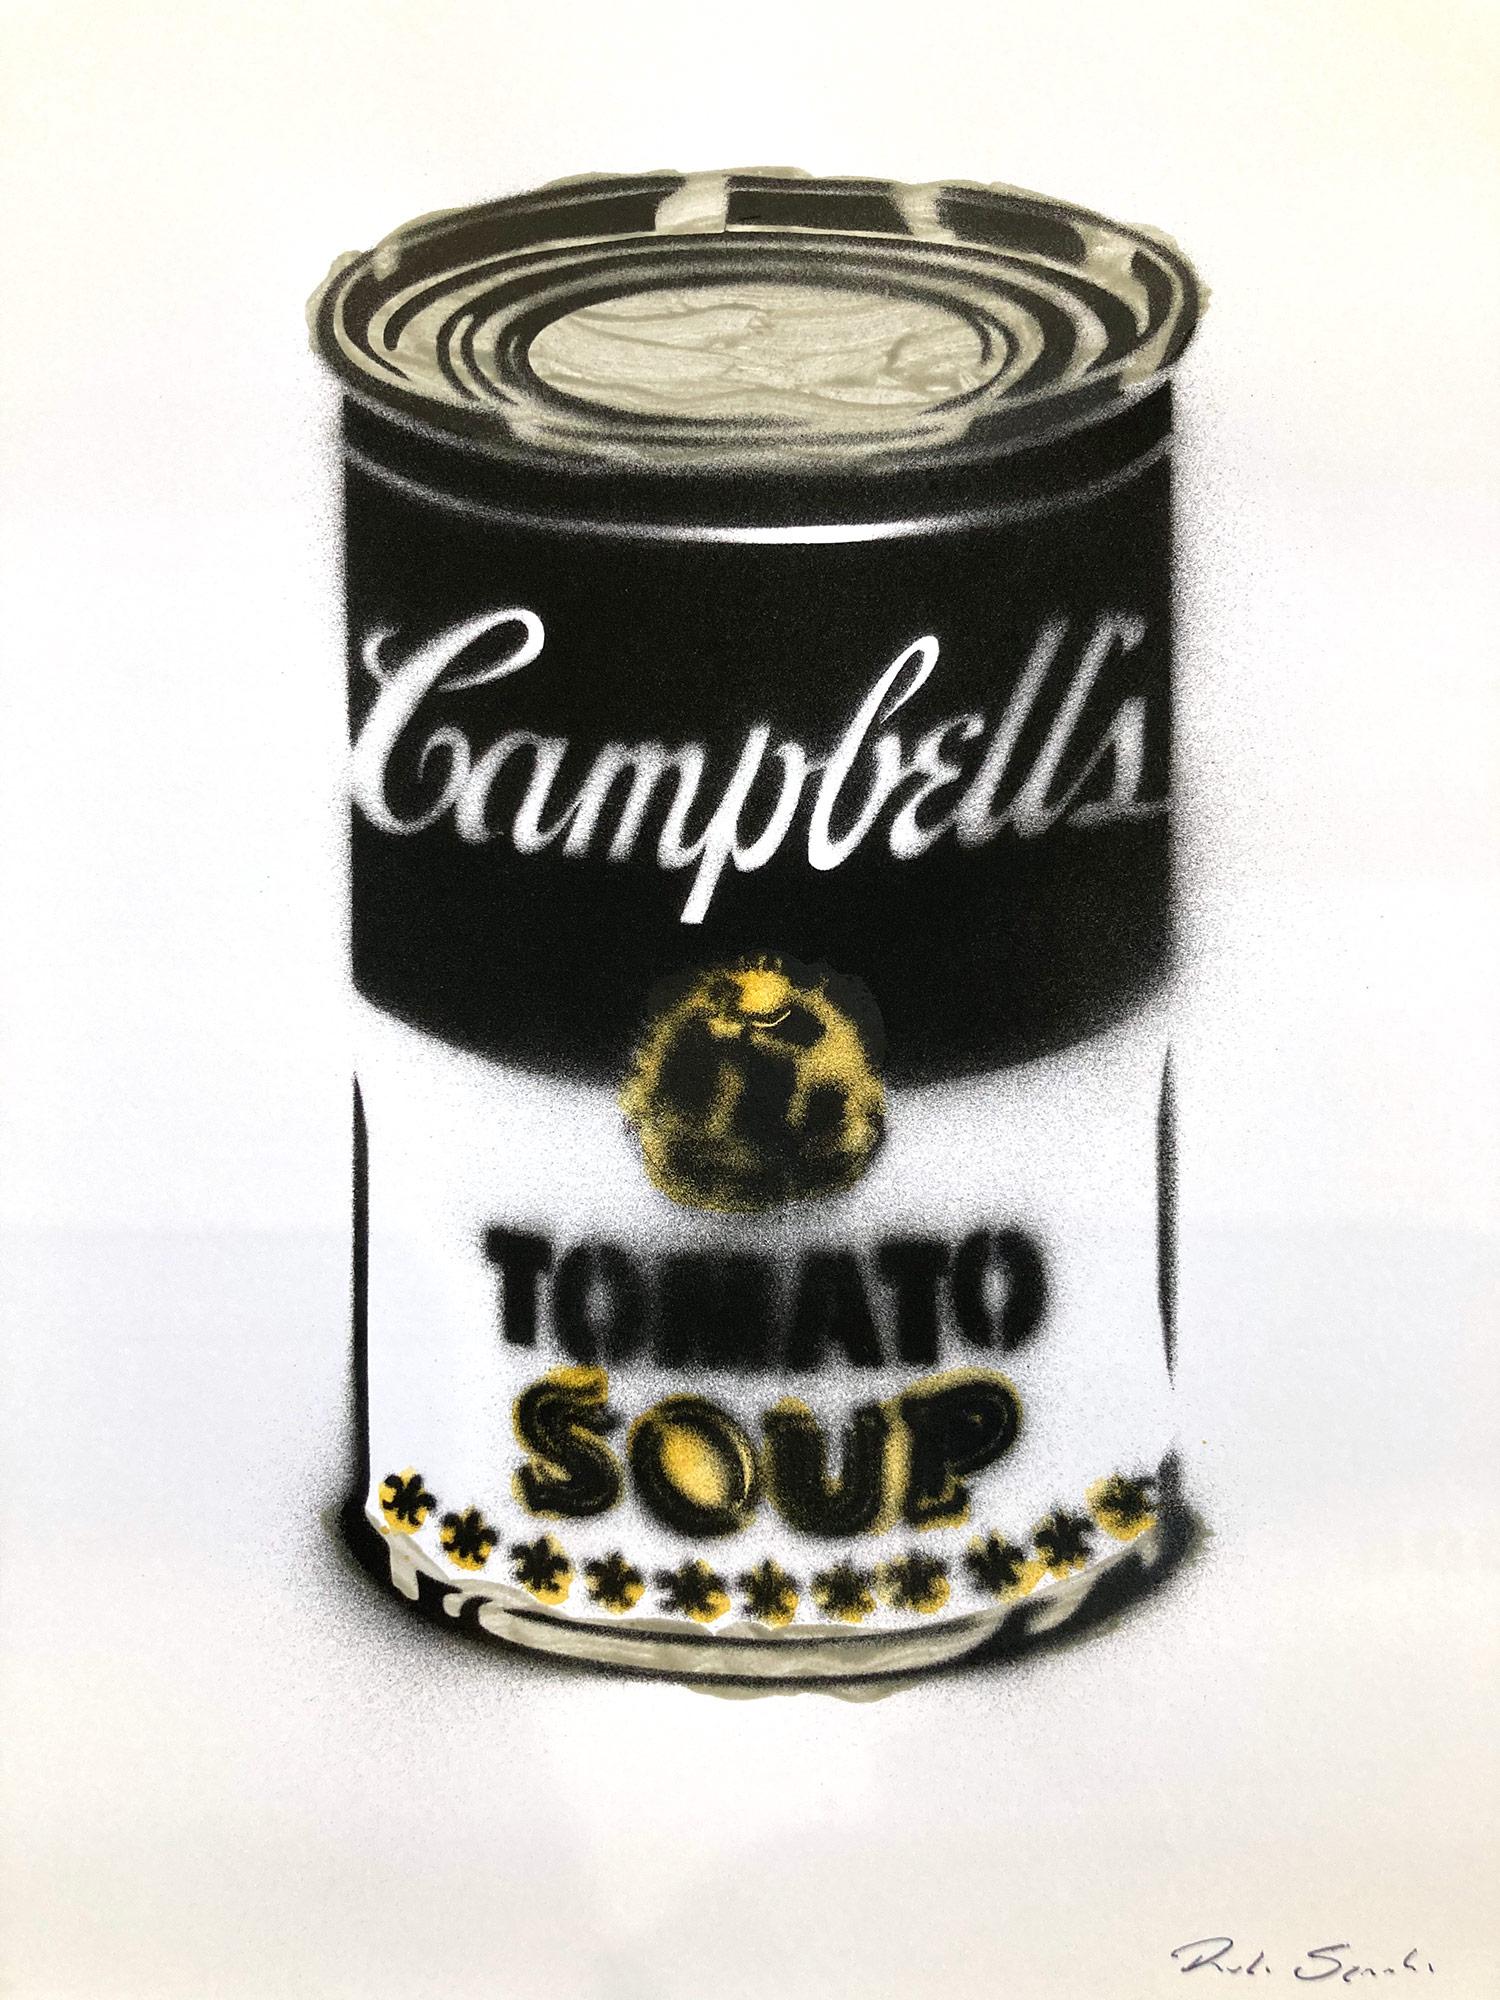 ""Campbell's Tomato Soup" d'après Andy Warhol, pochoir à tomates sur papier d'archives